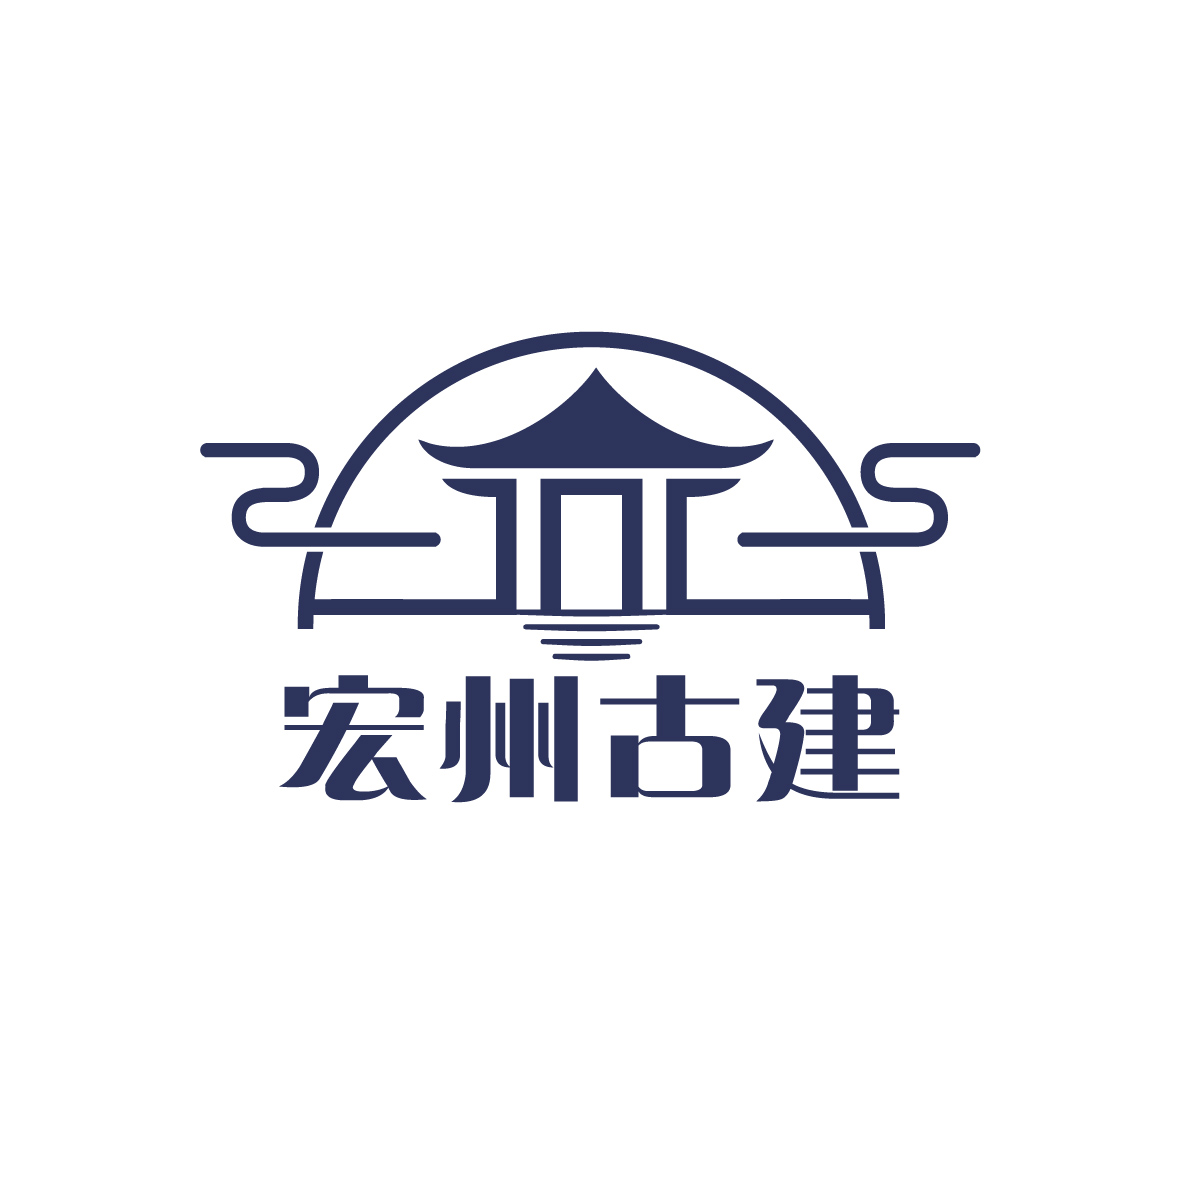 臨海宏州古建筑有限公司